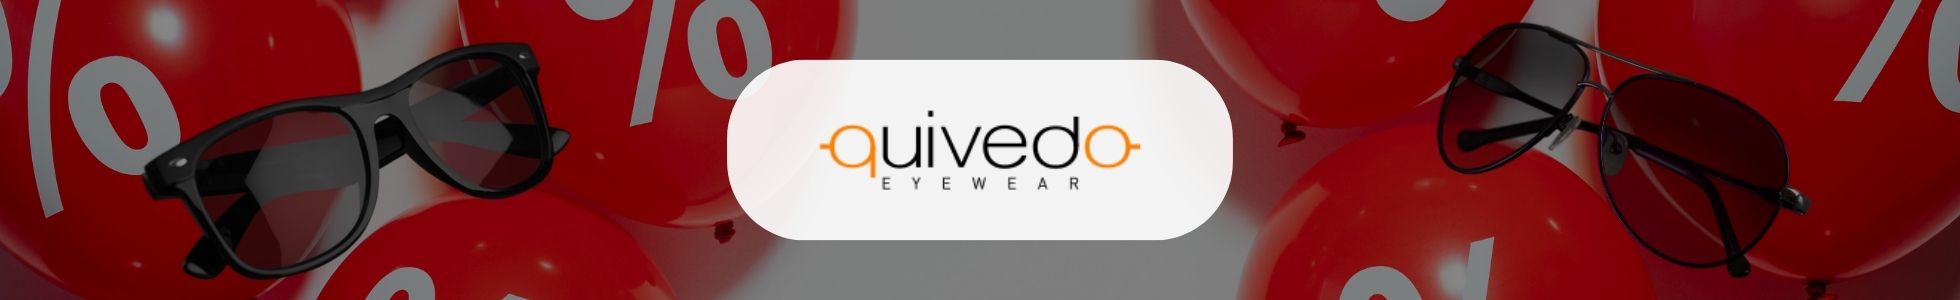 Quivedo.com - Shop online occhiali da sole